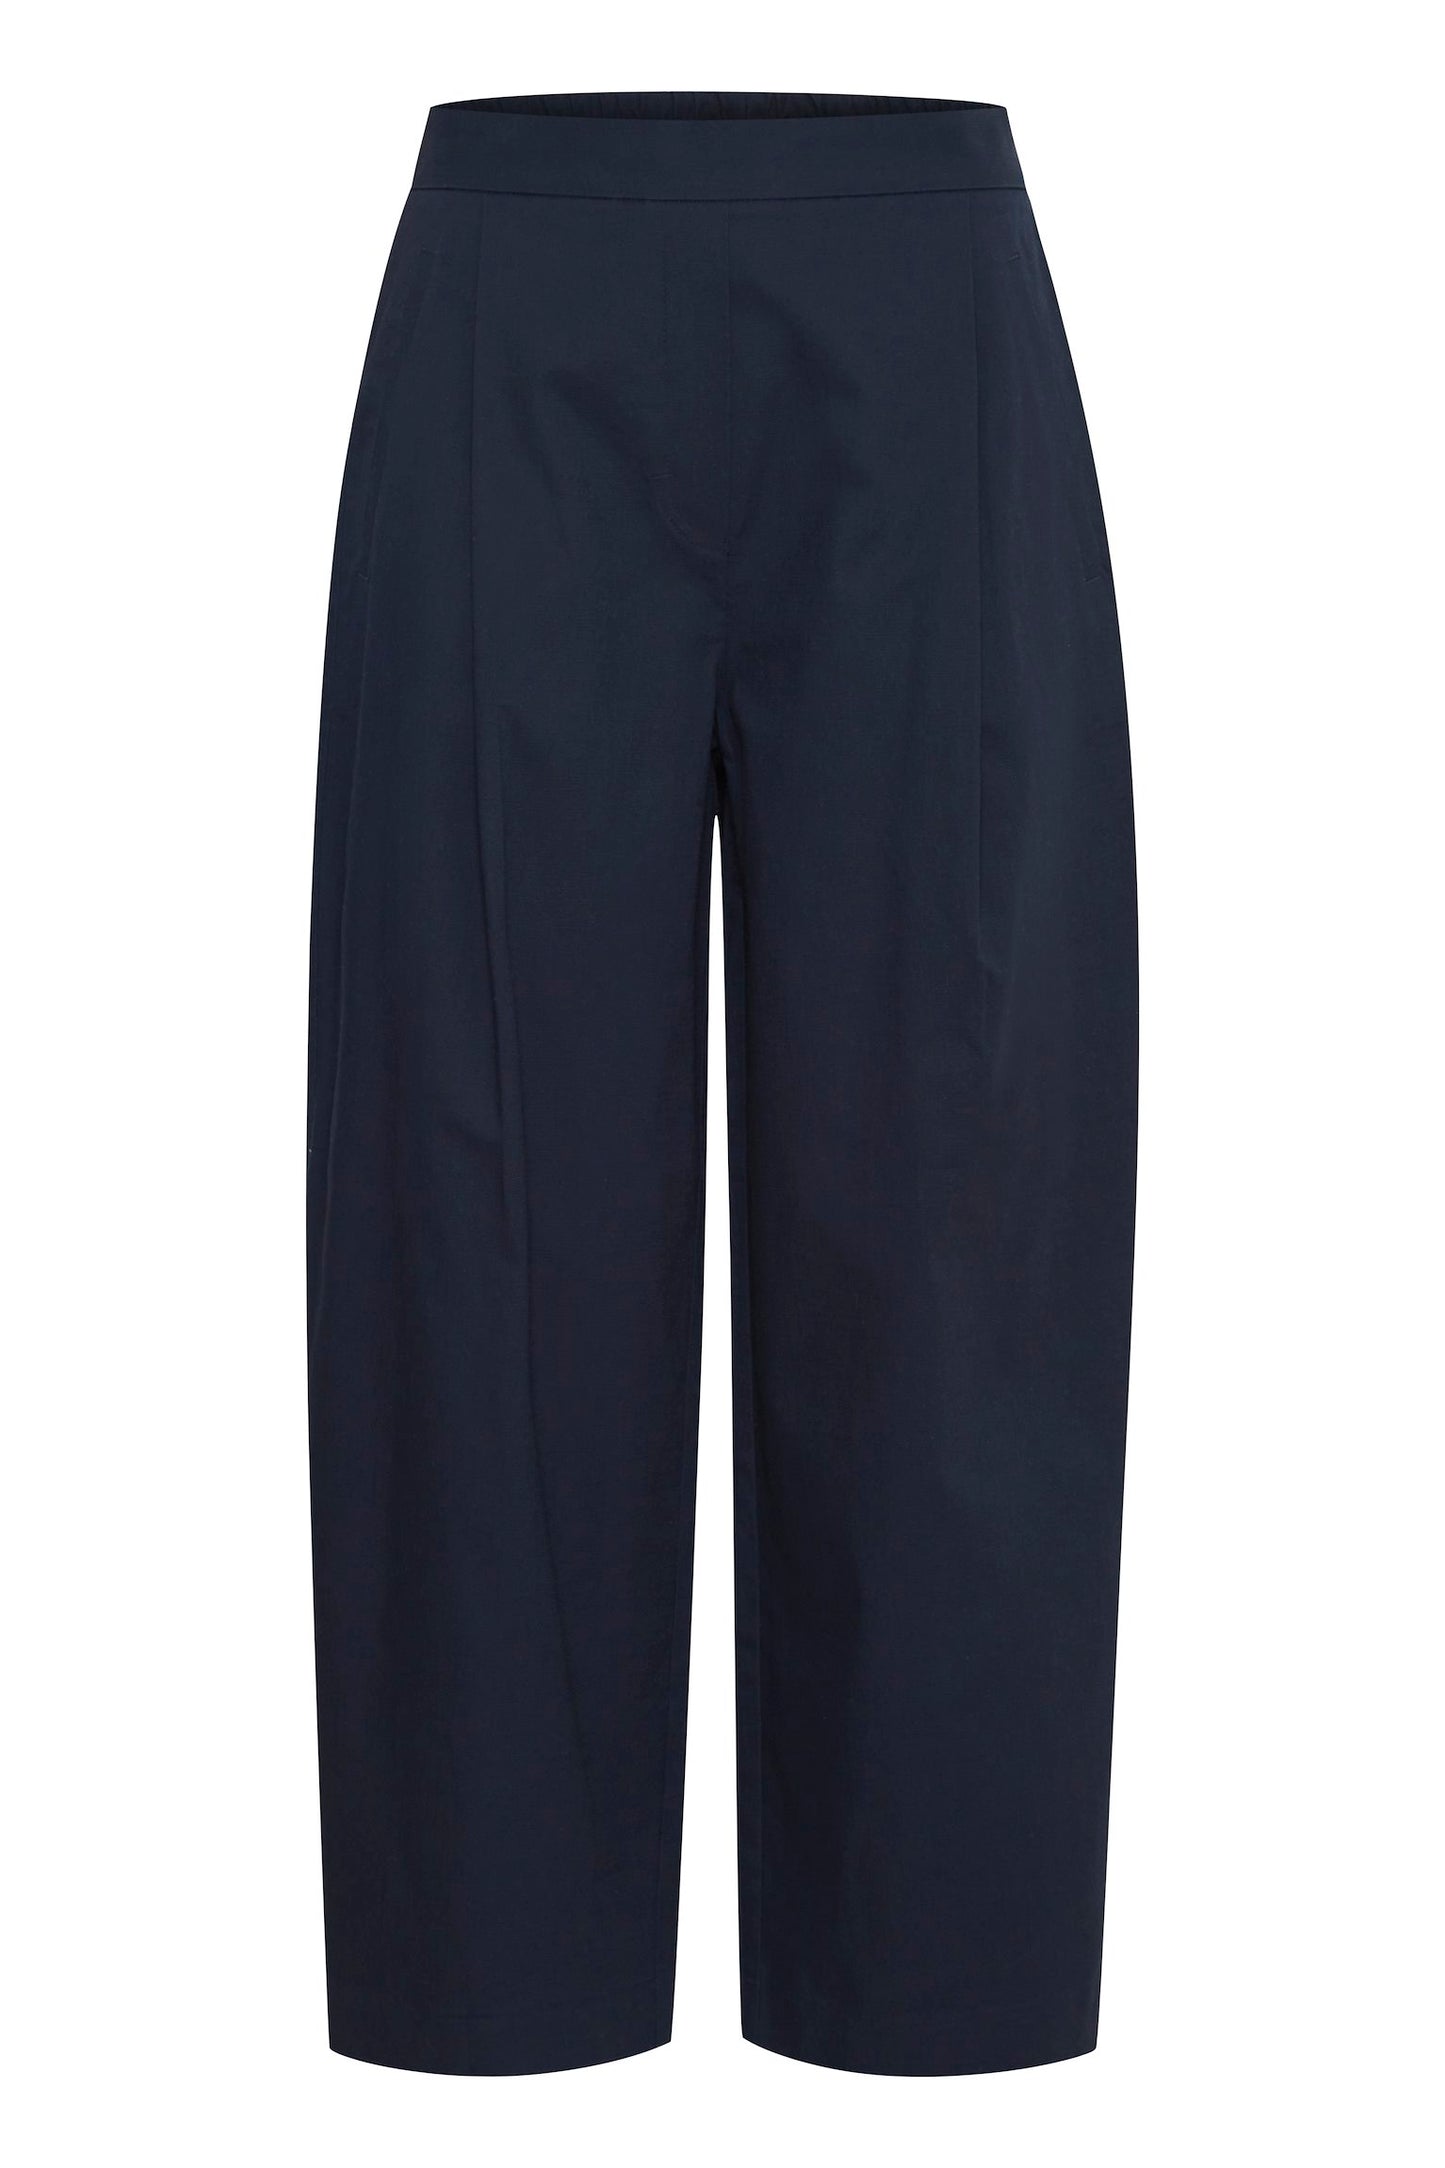 Wide Cotton Pants (navy blue)